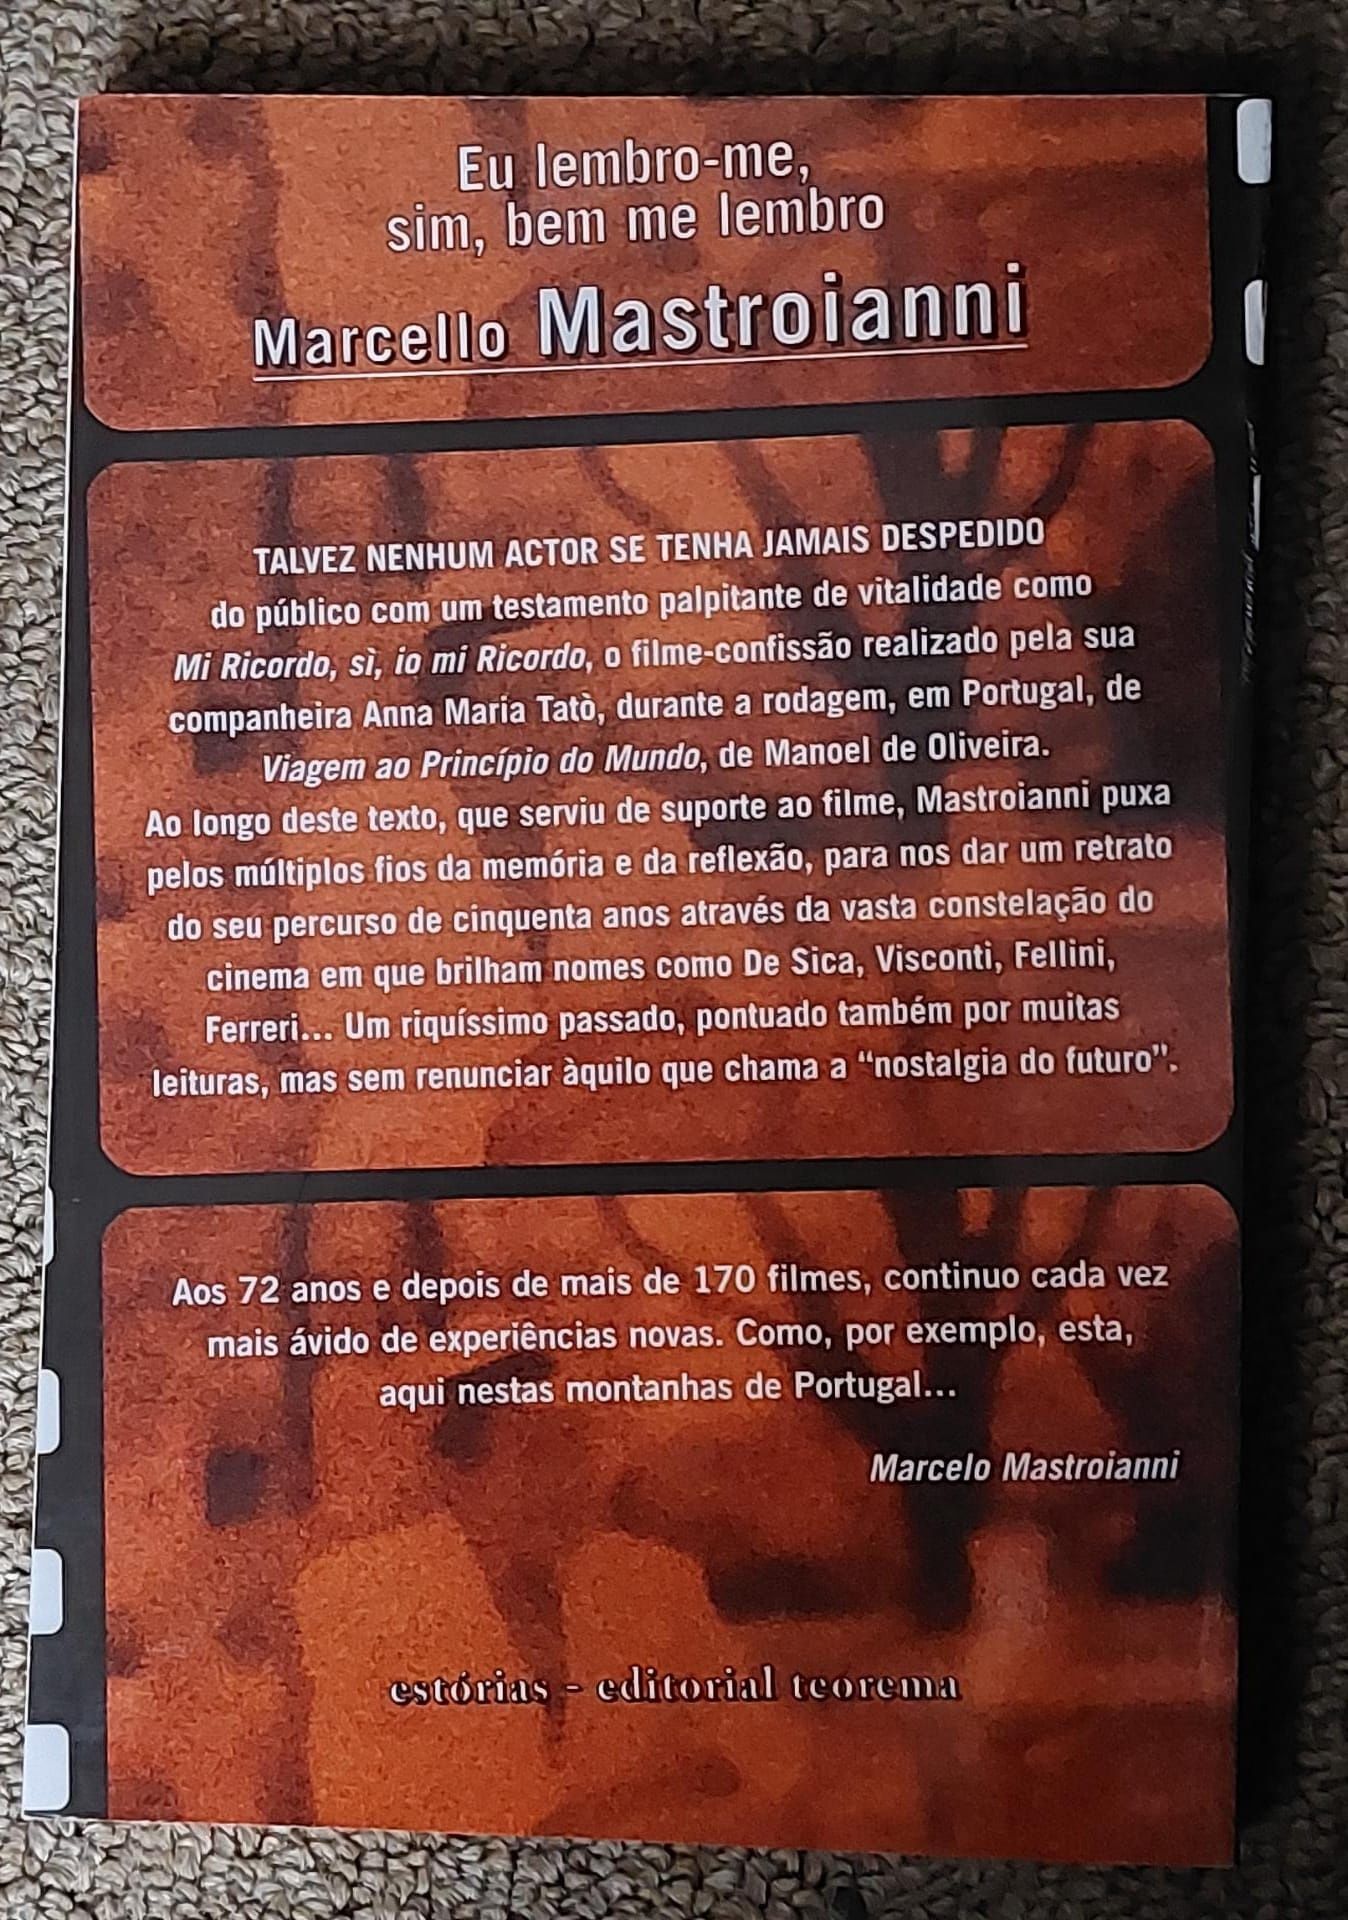 Biografia de Marcello Mastroianni